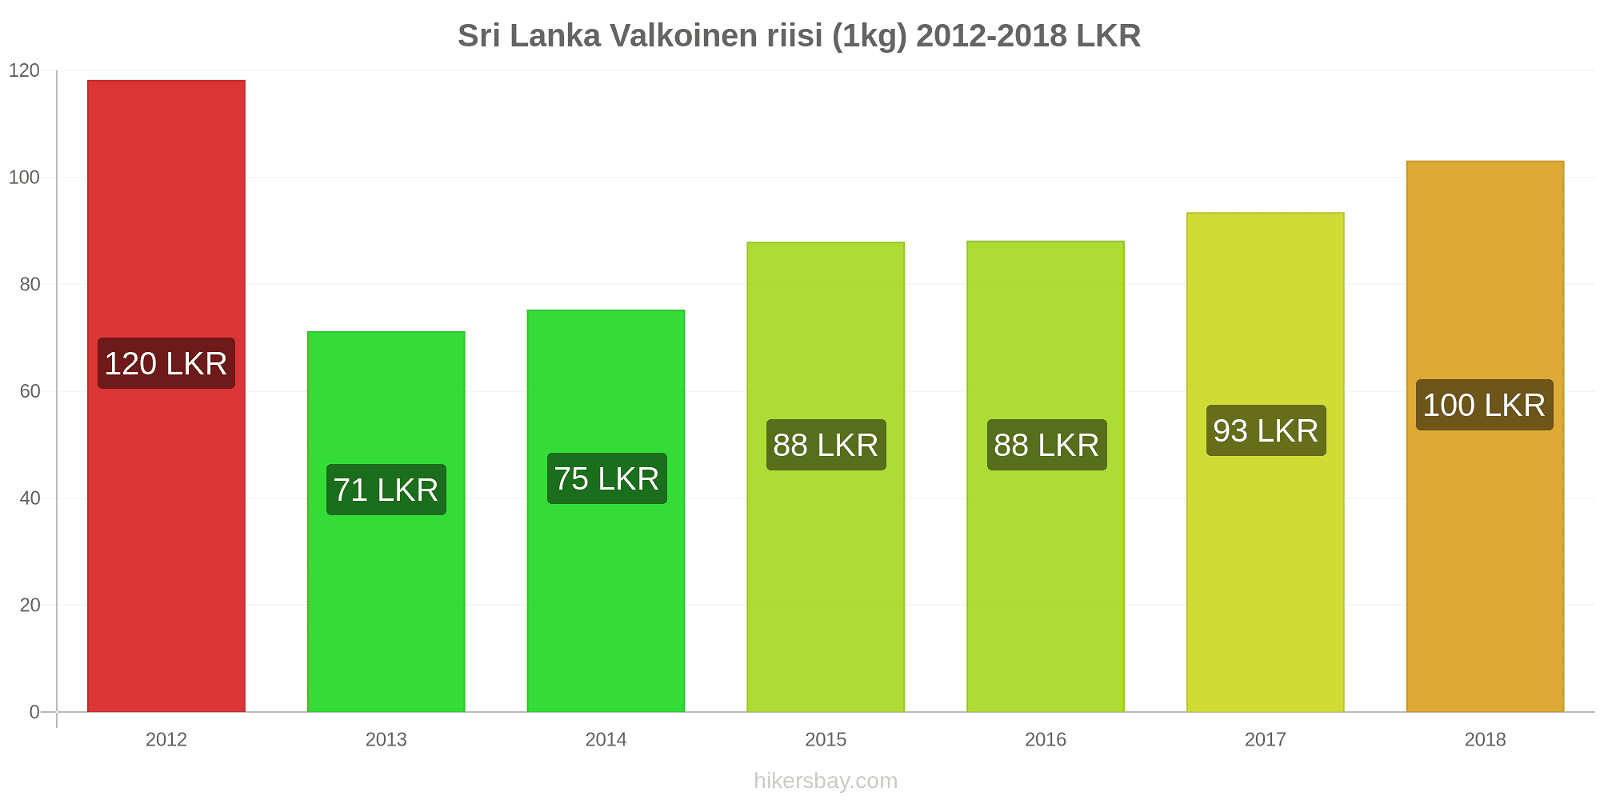 Sri Lanka hintojen muutokset Valkoinen riisi (1kg) hikersbay.com